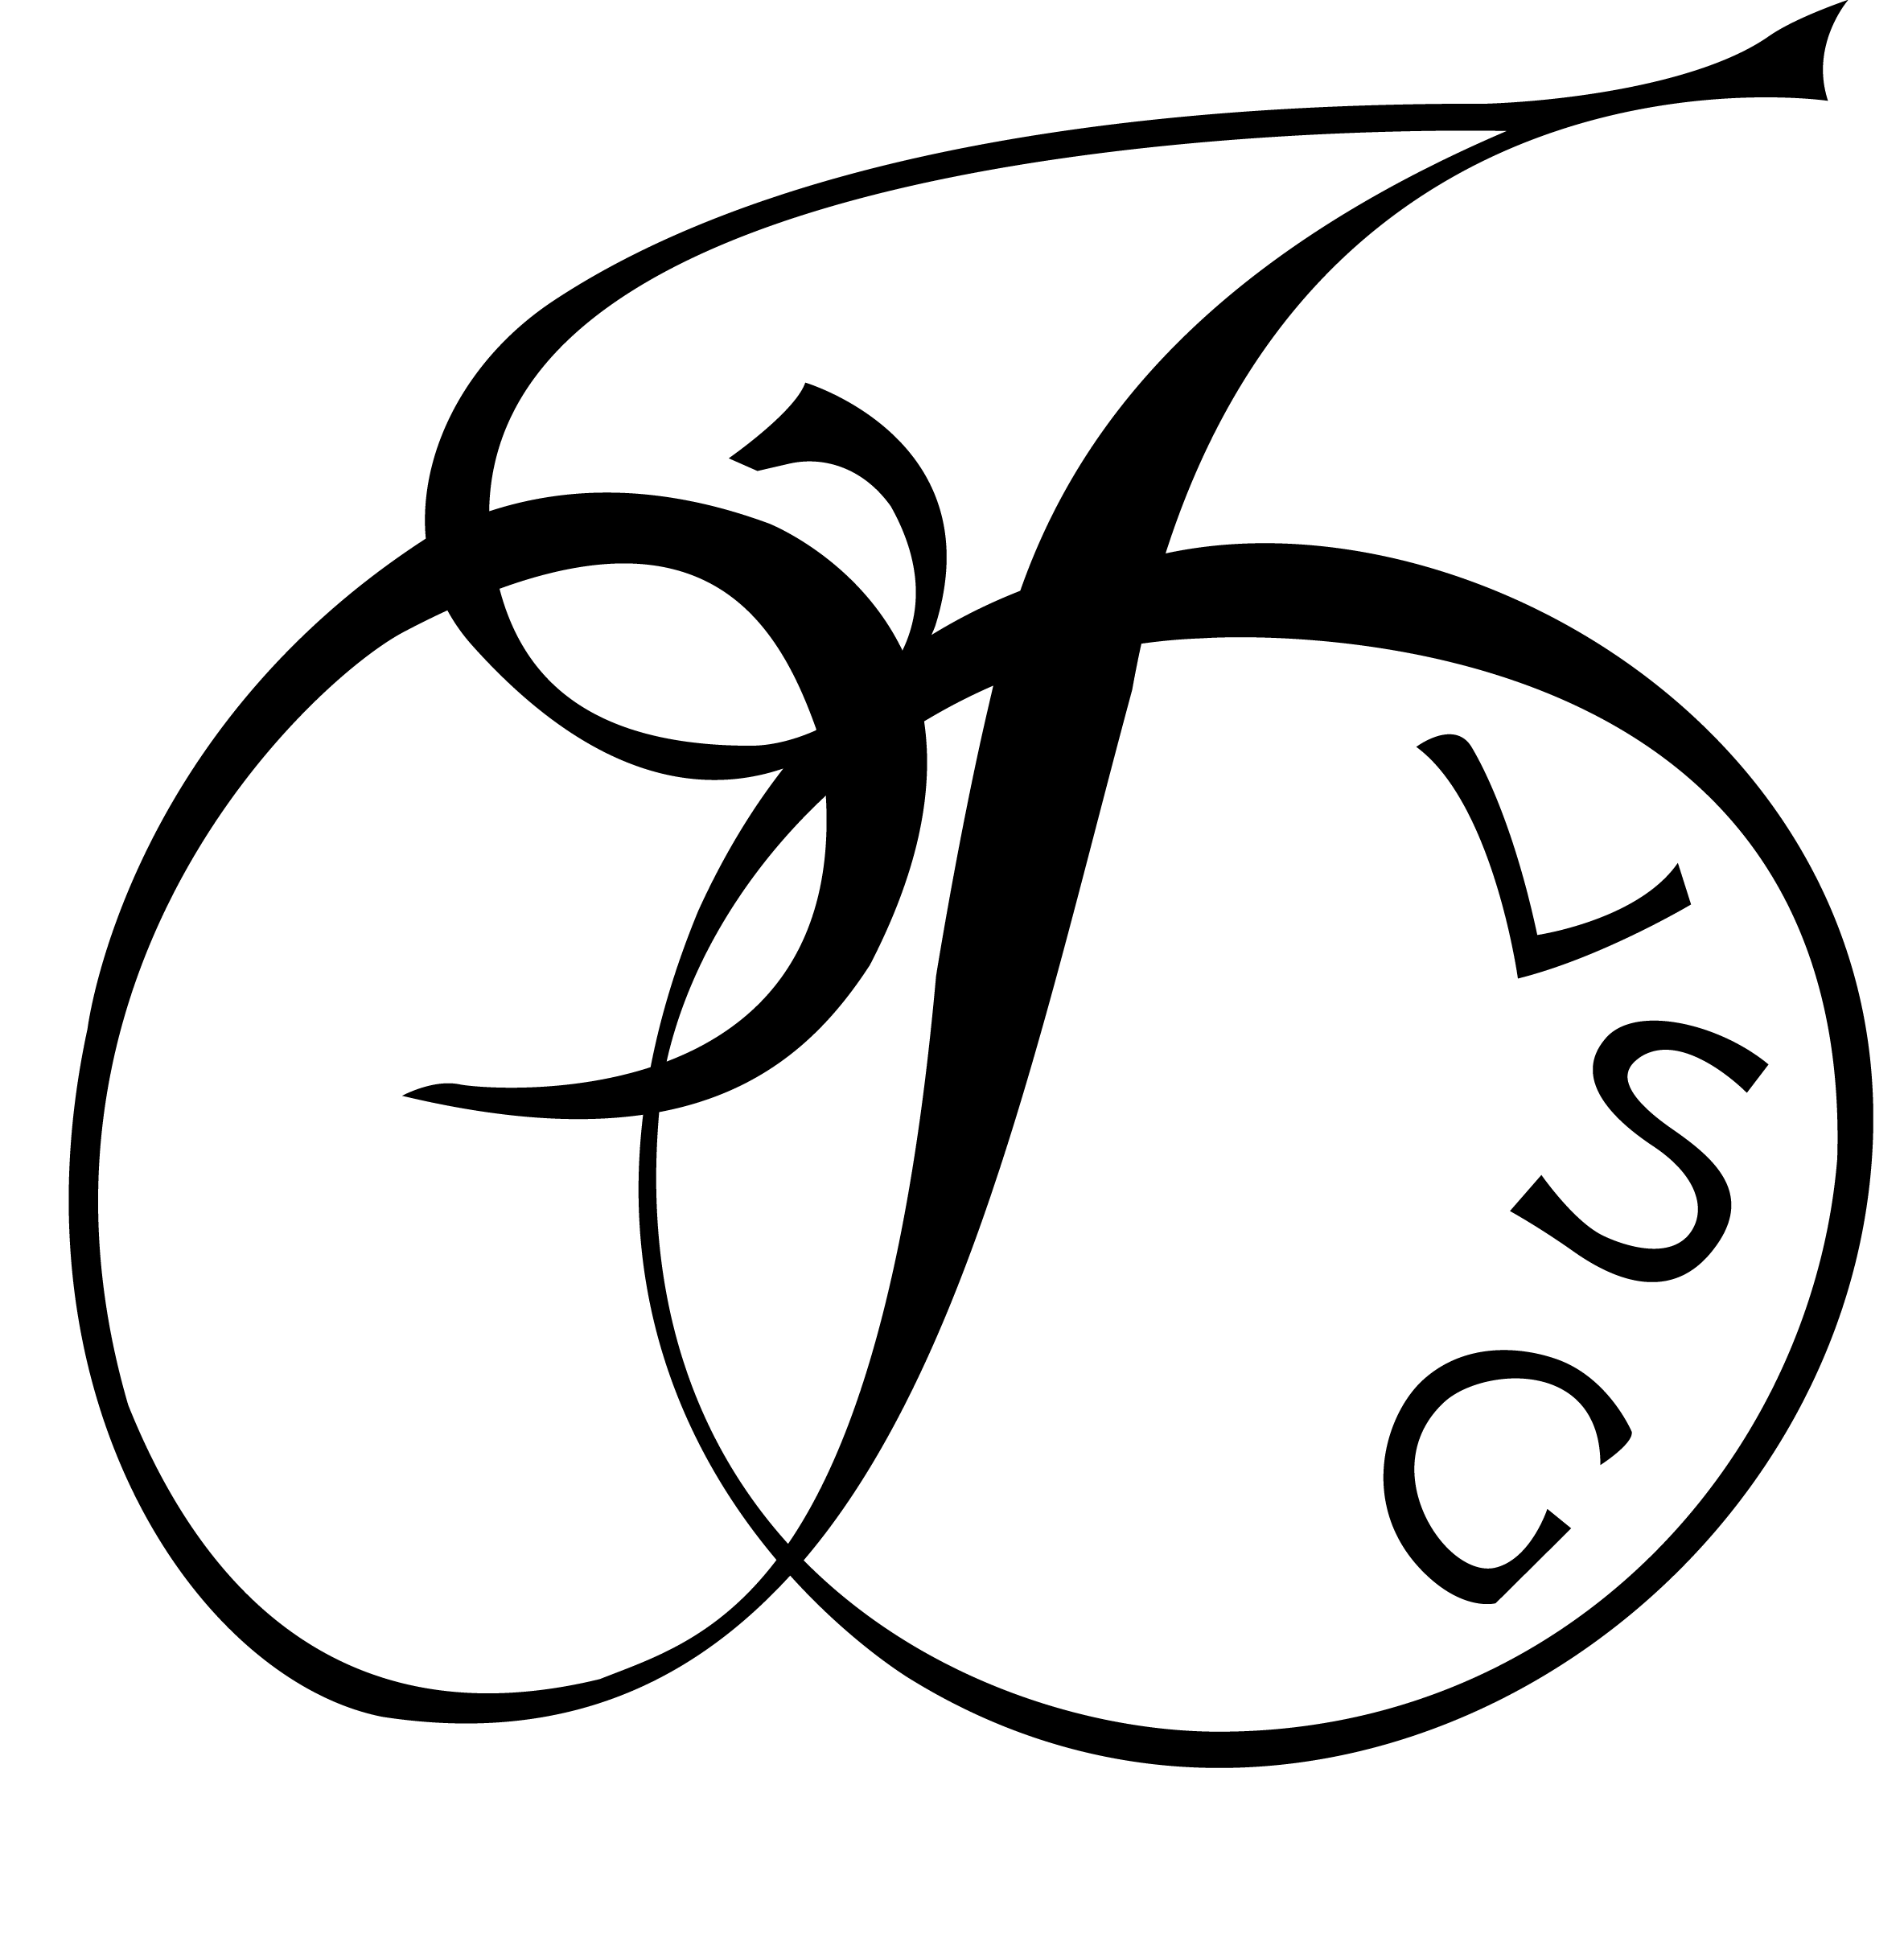 FDLSG Logo 2018